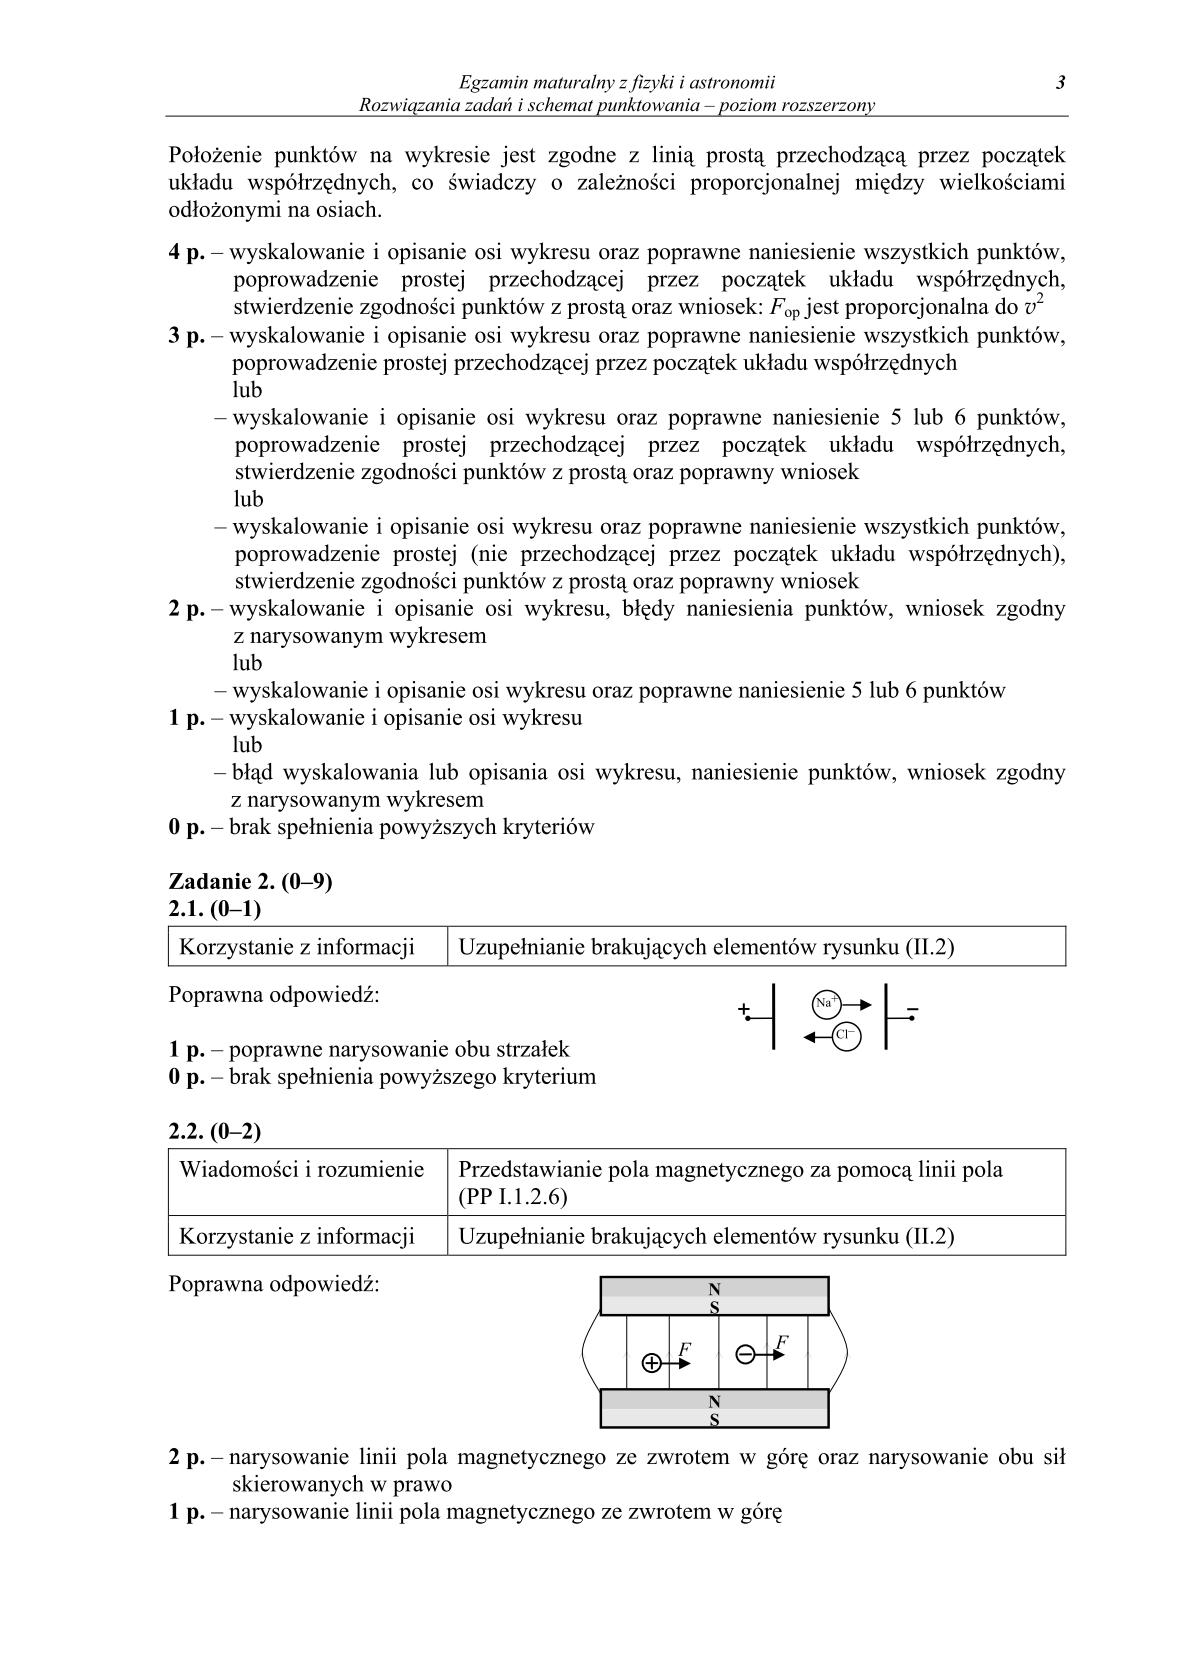 odpowiedzi-fizyka-i-astronomia-poziom-rozszerzony-matura-2014-str.3